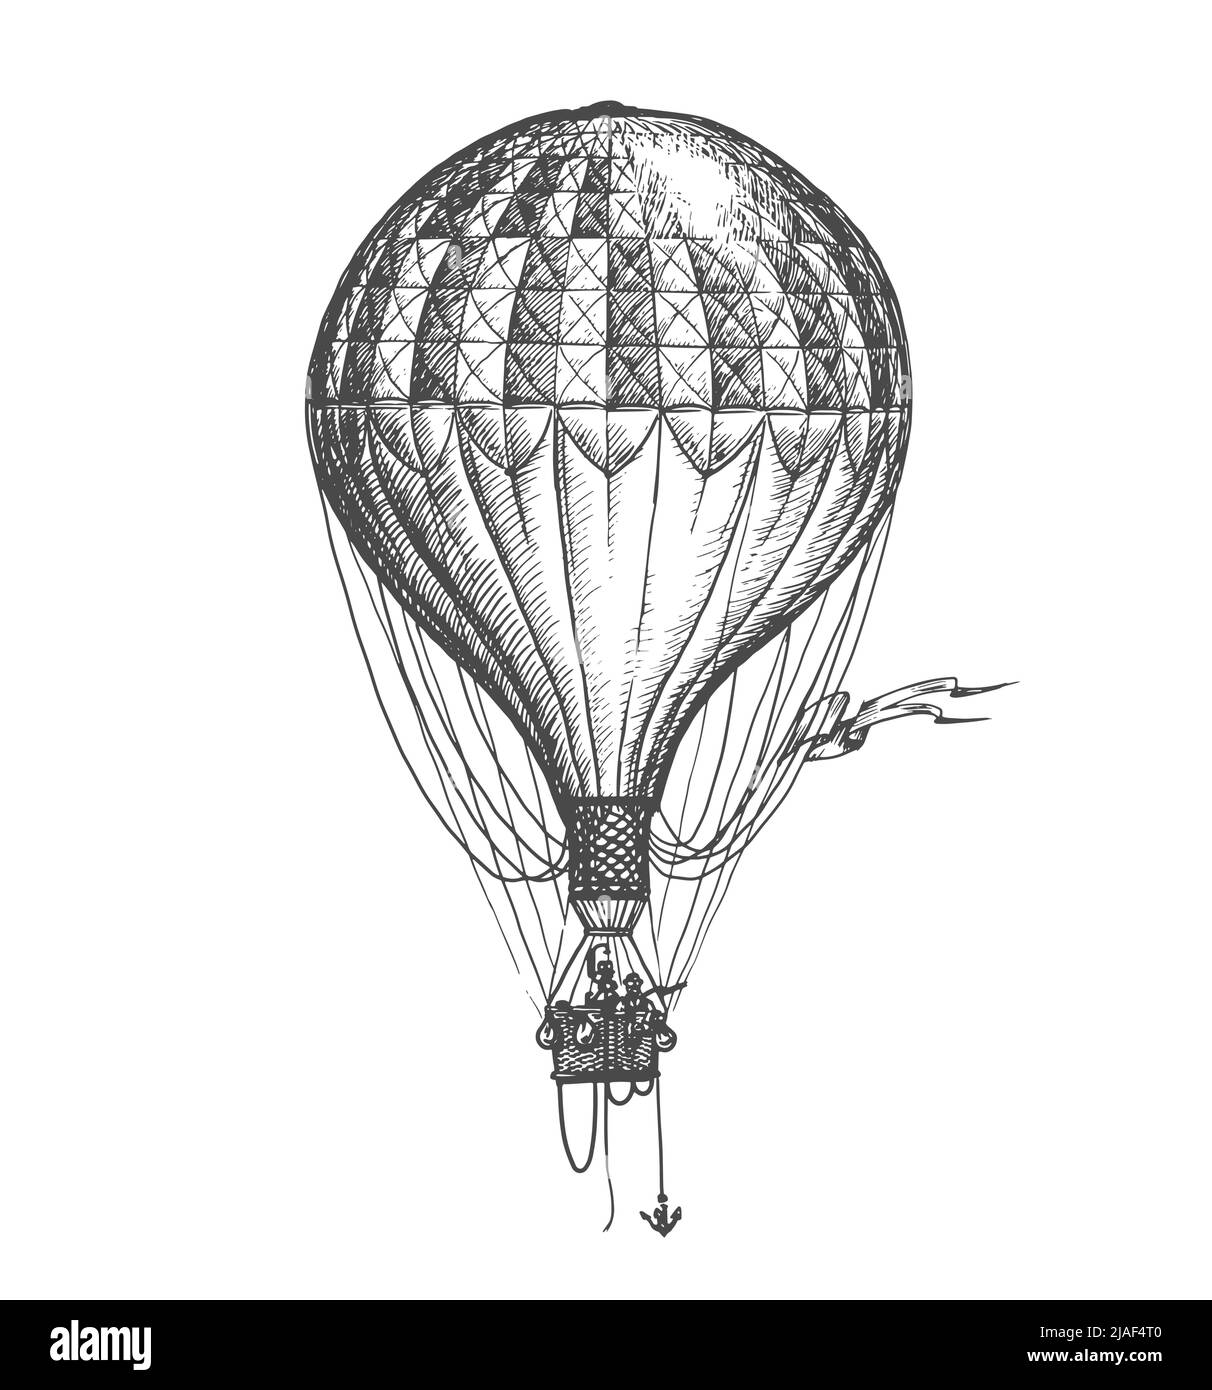 Hot air balloon drawing Royalty Free Vector Image